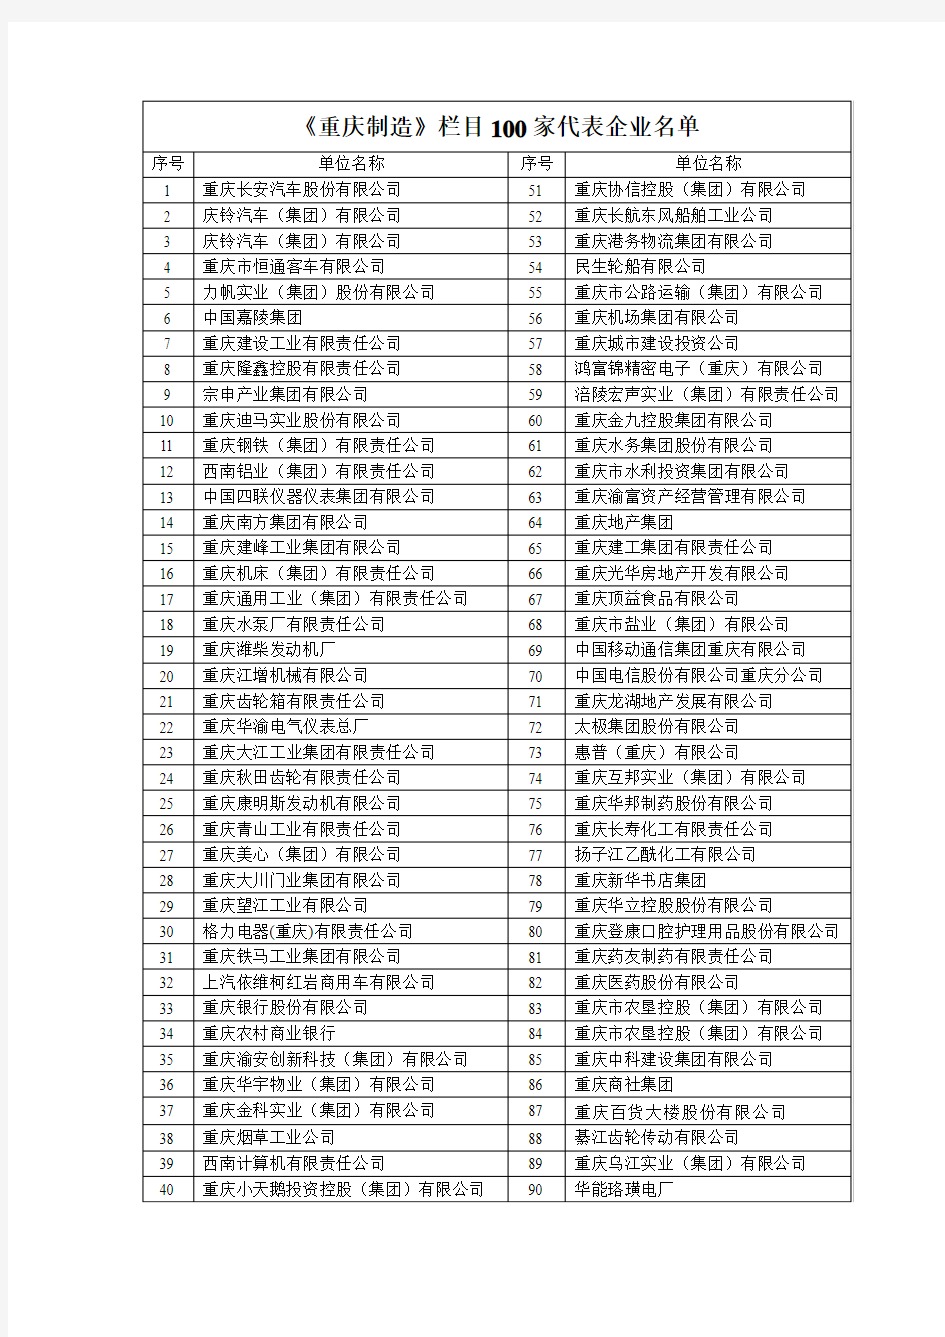 《重庆制造》栏目100家代表企业名单